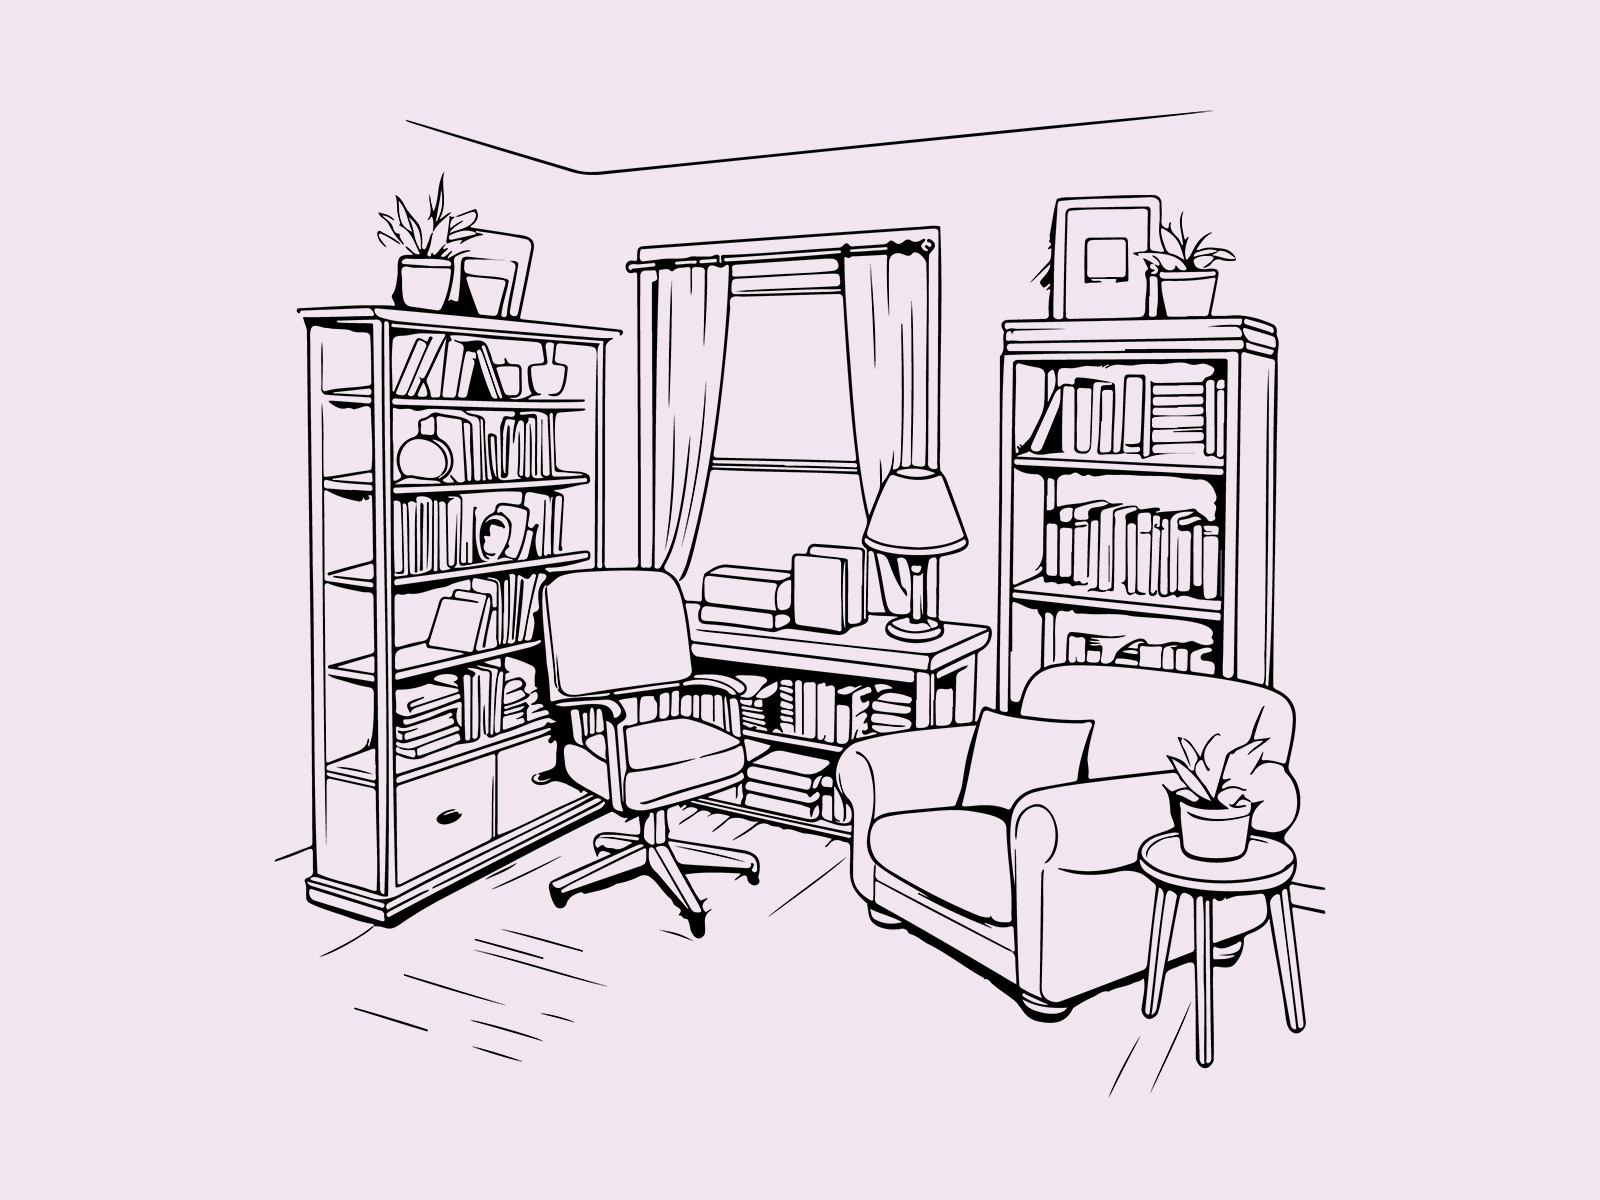 رسم غرفة دراسة How to draw a study room simply | Drawings, Room, Texture